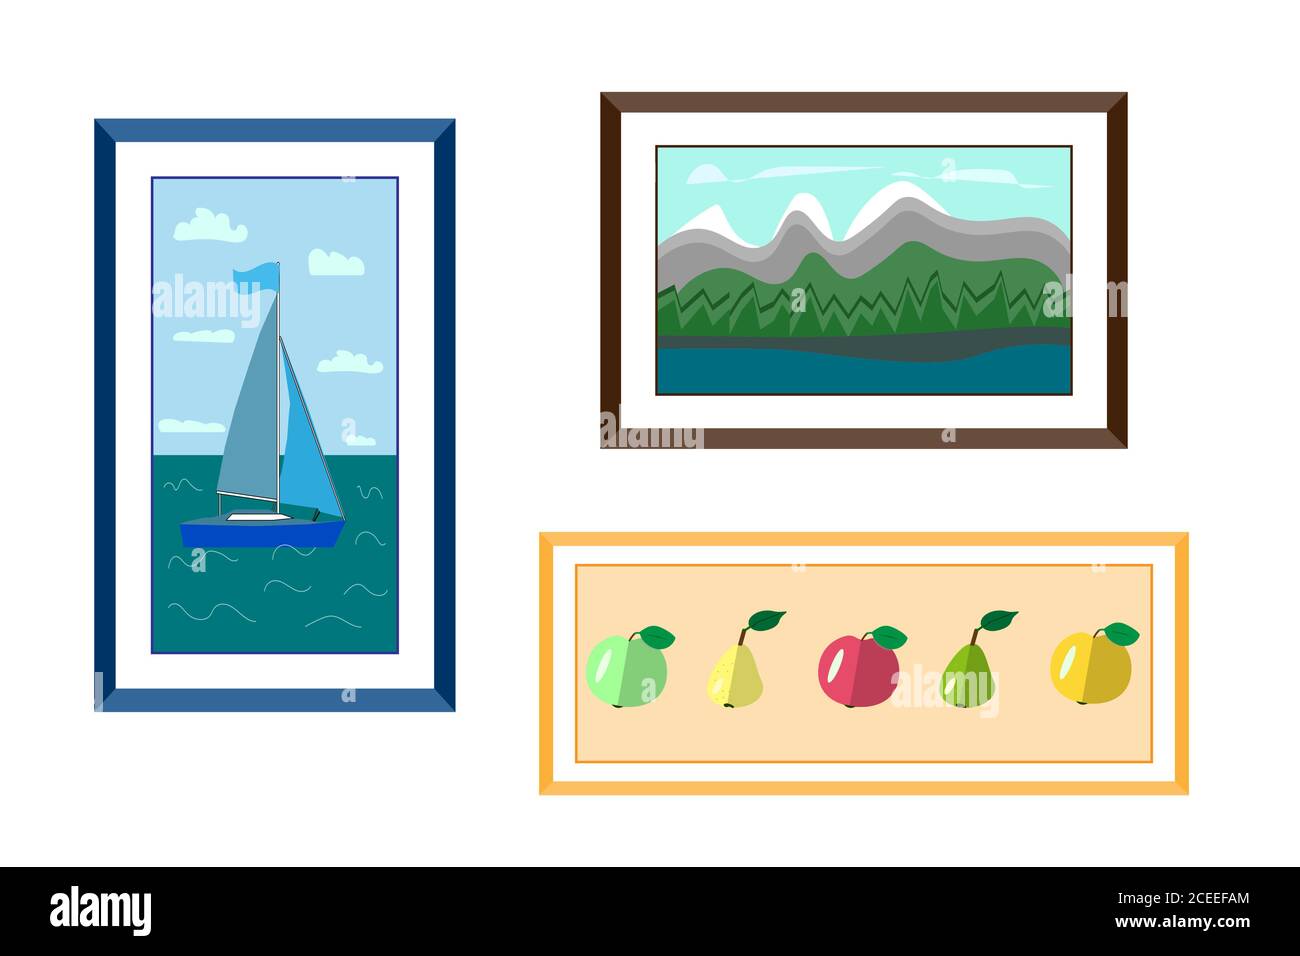 Drei gerahmte Gemälde an einer weißen Wand. yacht auf See in einem blauen Rahmen, Berglandschaft in einem braunen Rahmen und Äpfel und Birnen in einem orangen Rahmen Stock Vektor